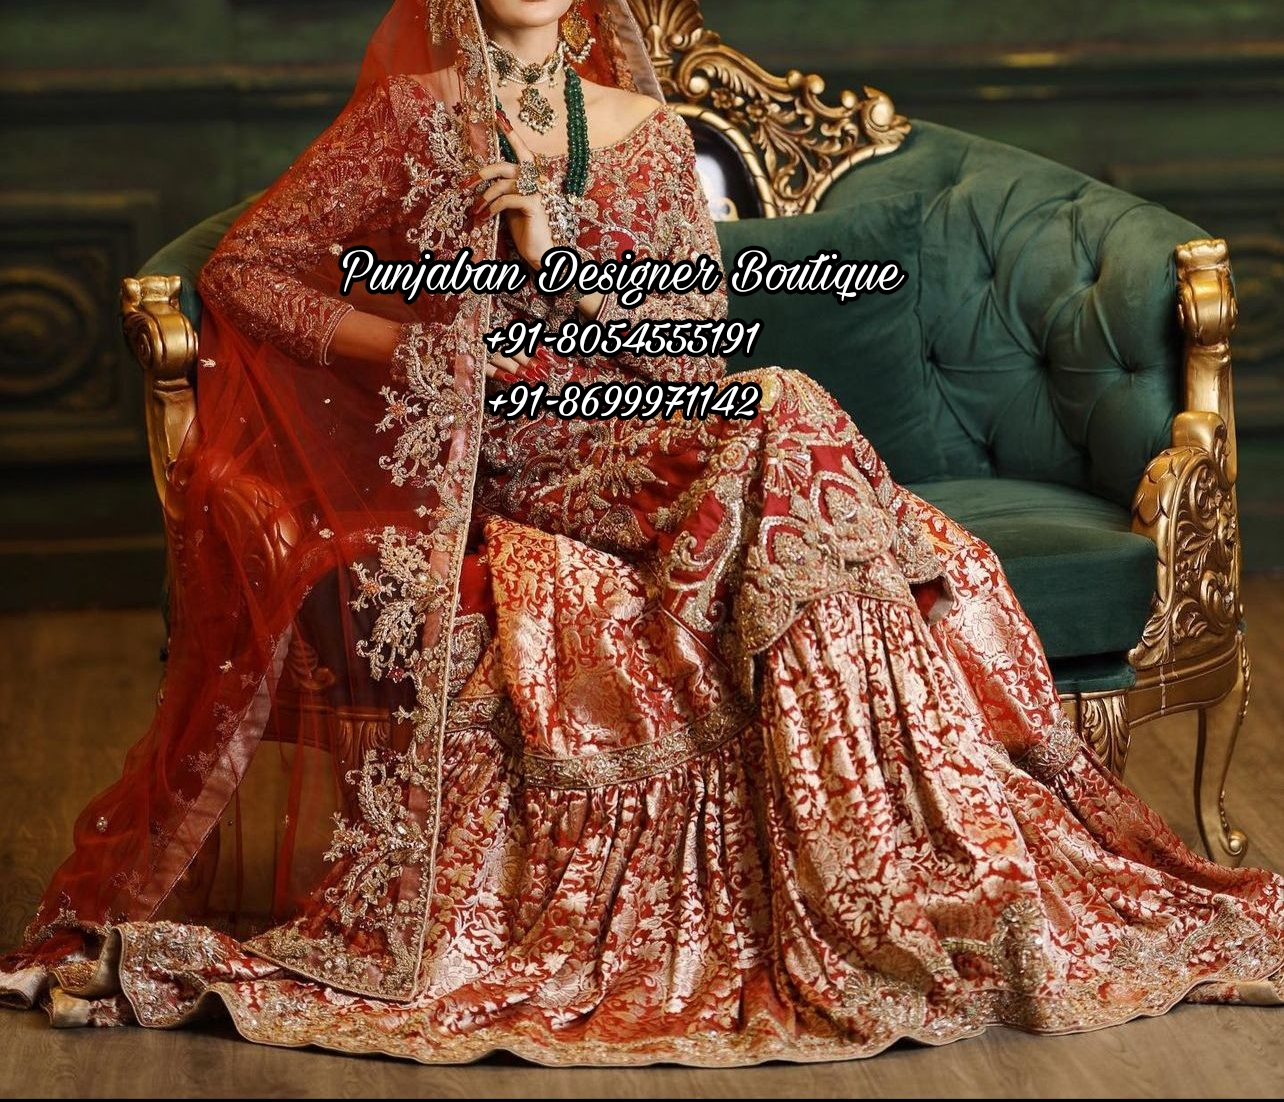 Punjabi Wedding Suits For Bride | Punjabi Wedding Suits